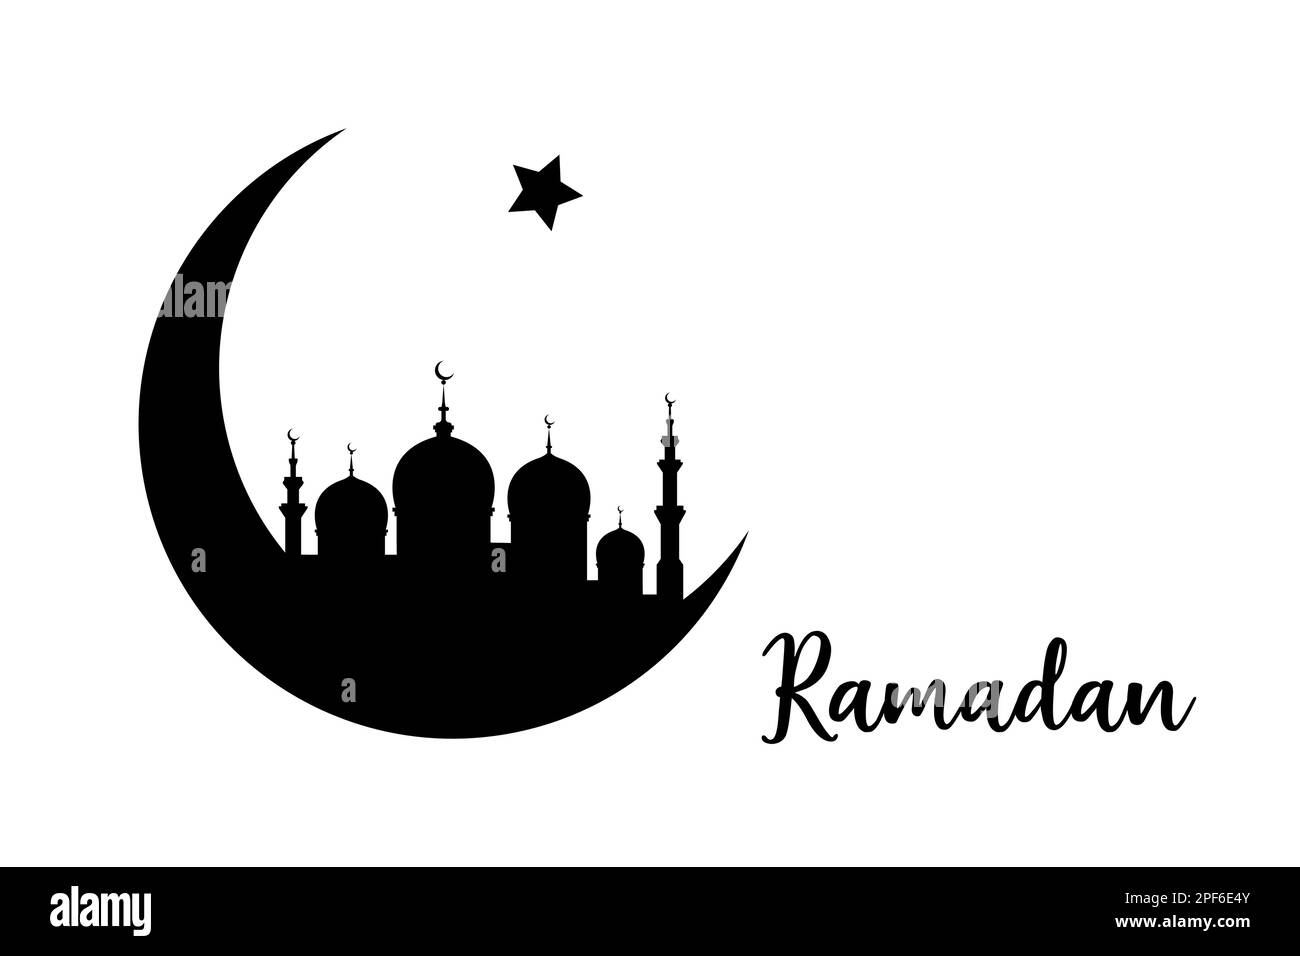 Ramadan-Konzept in Halbmondform mit arabisch-islamischer Moschee zur Feier des Heiligen Monats der muslimischen Gemeinschaft, Vektor-schwarze Silhouette iso Stock Vektor